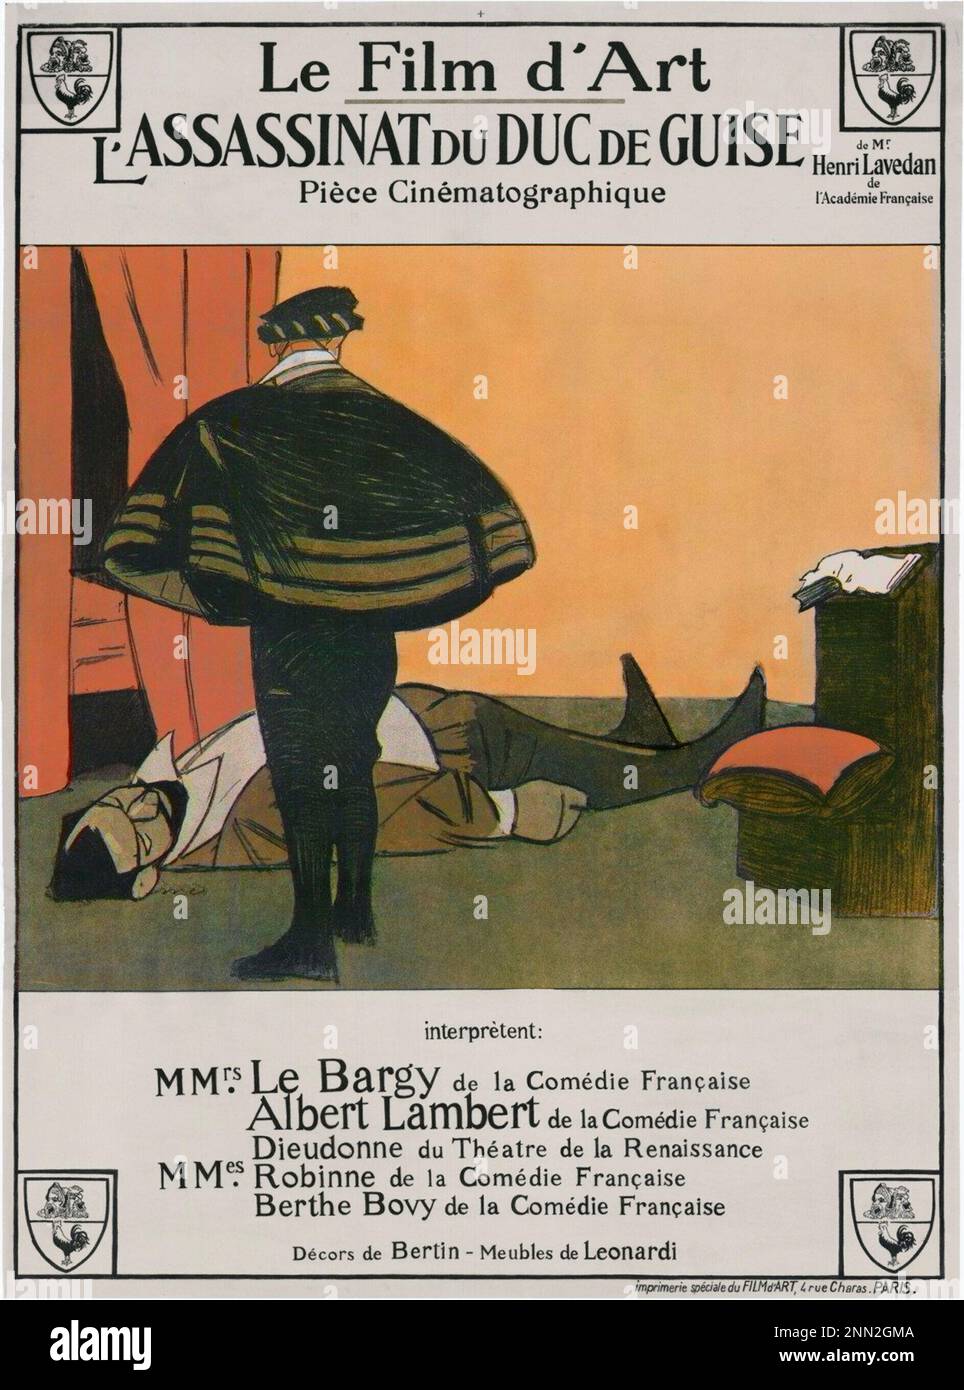 L' ASSASSINAT DU DUC DE GUISE (1908), directed by ANDRÉ CALMETTES and CHARLES LE LE BARGY. Cartel de 'L'ASSASSINAT DU DUC DE GUISE' (El asesinato del duque de Guise), una película de 'Le Film d'Art' 1908. Le Film d'Art. Credit: Le Film d'Art / Album Stock Photo